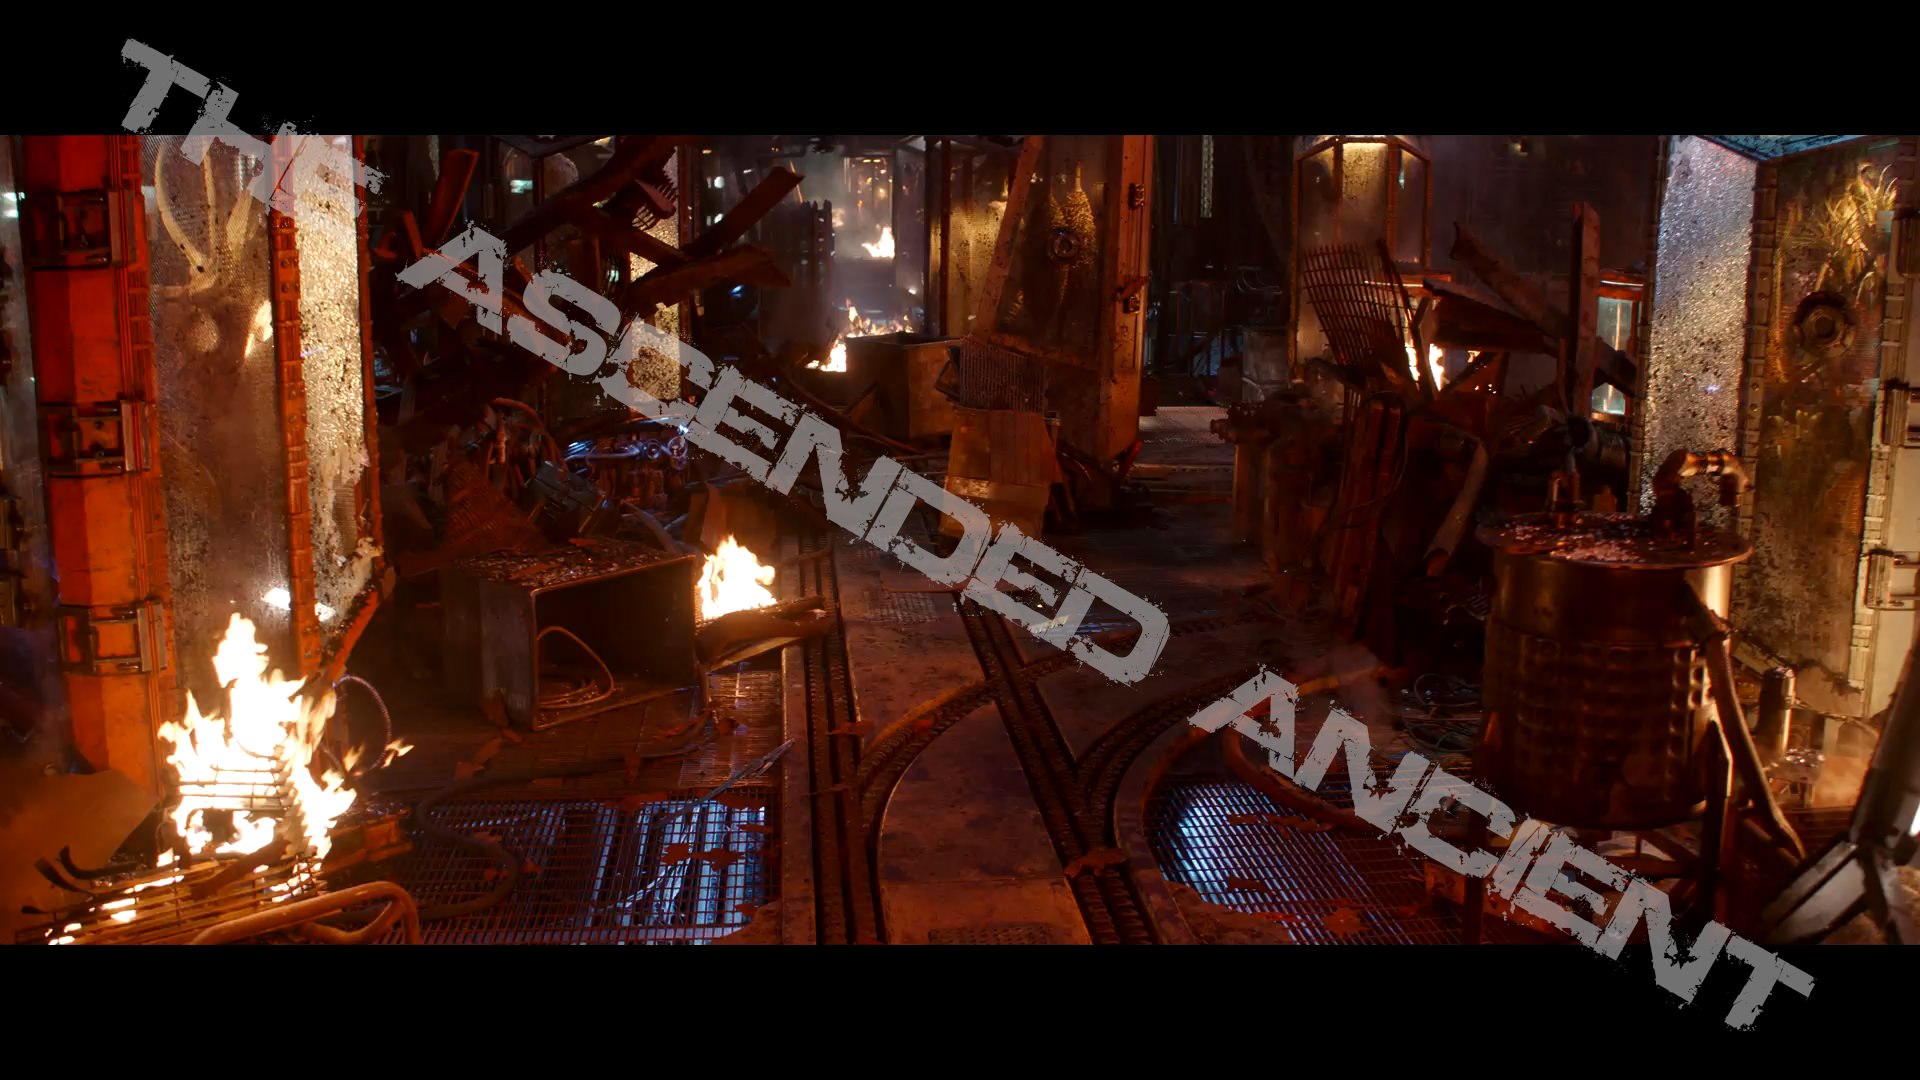  Διέρρευσαν screenshot από το trailer του Infinity War